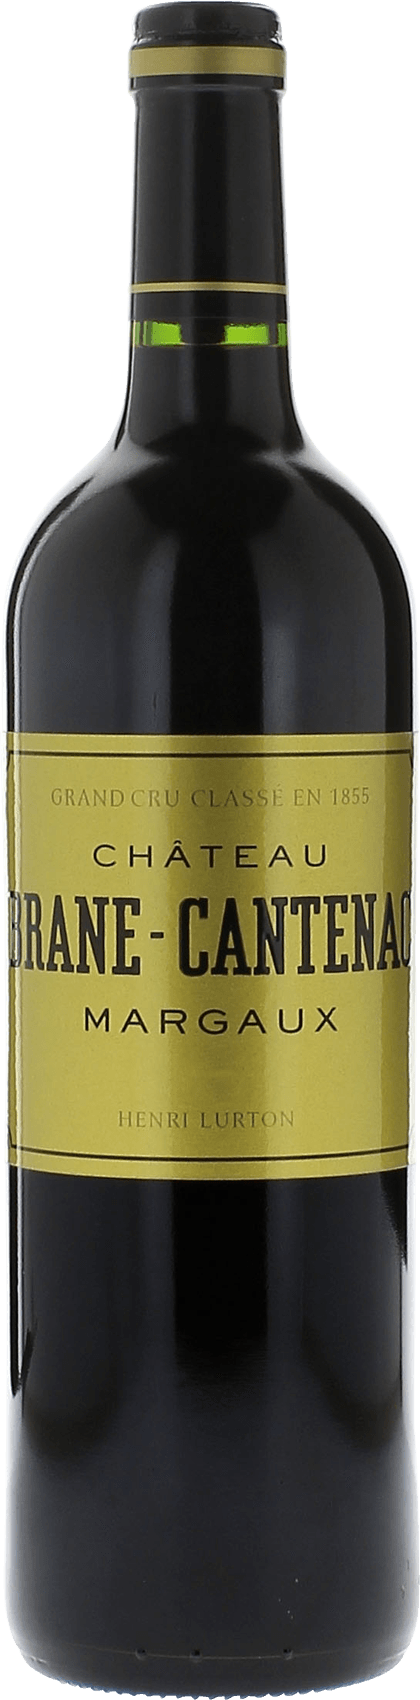 Brane cantenac 2011 2me Grand cru class Margaux, Bordeaux rouge